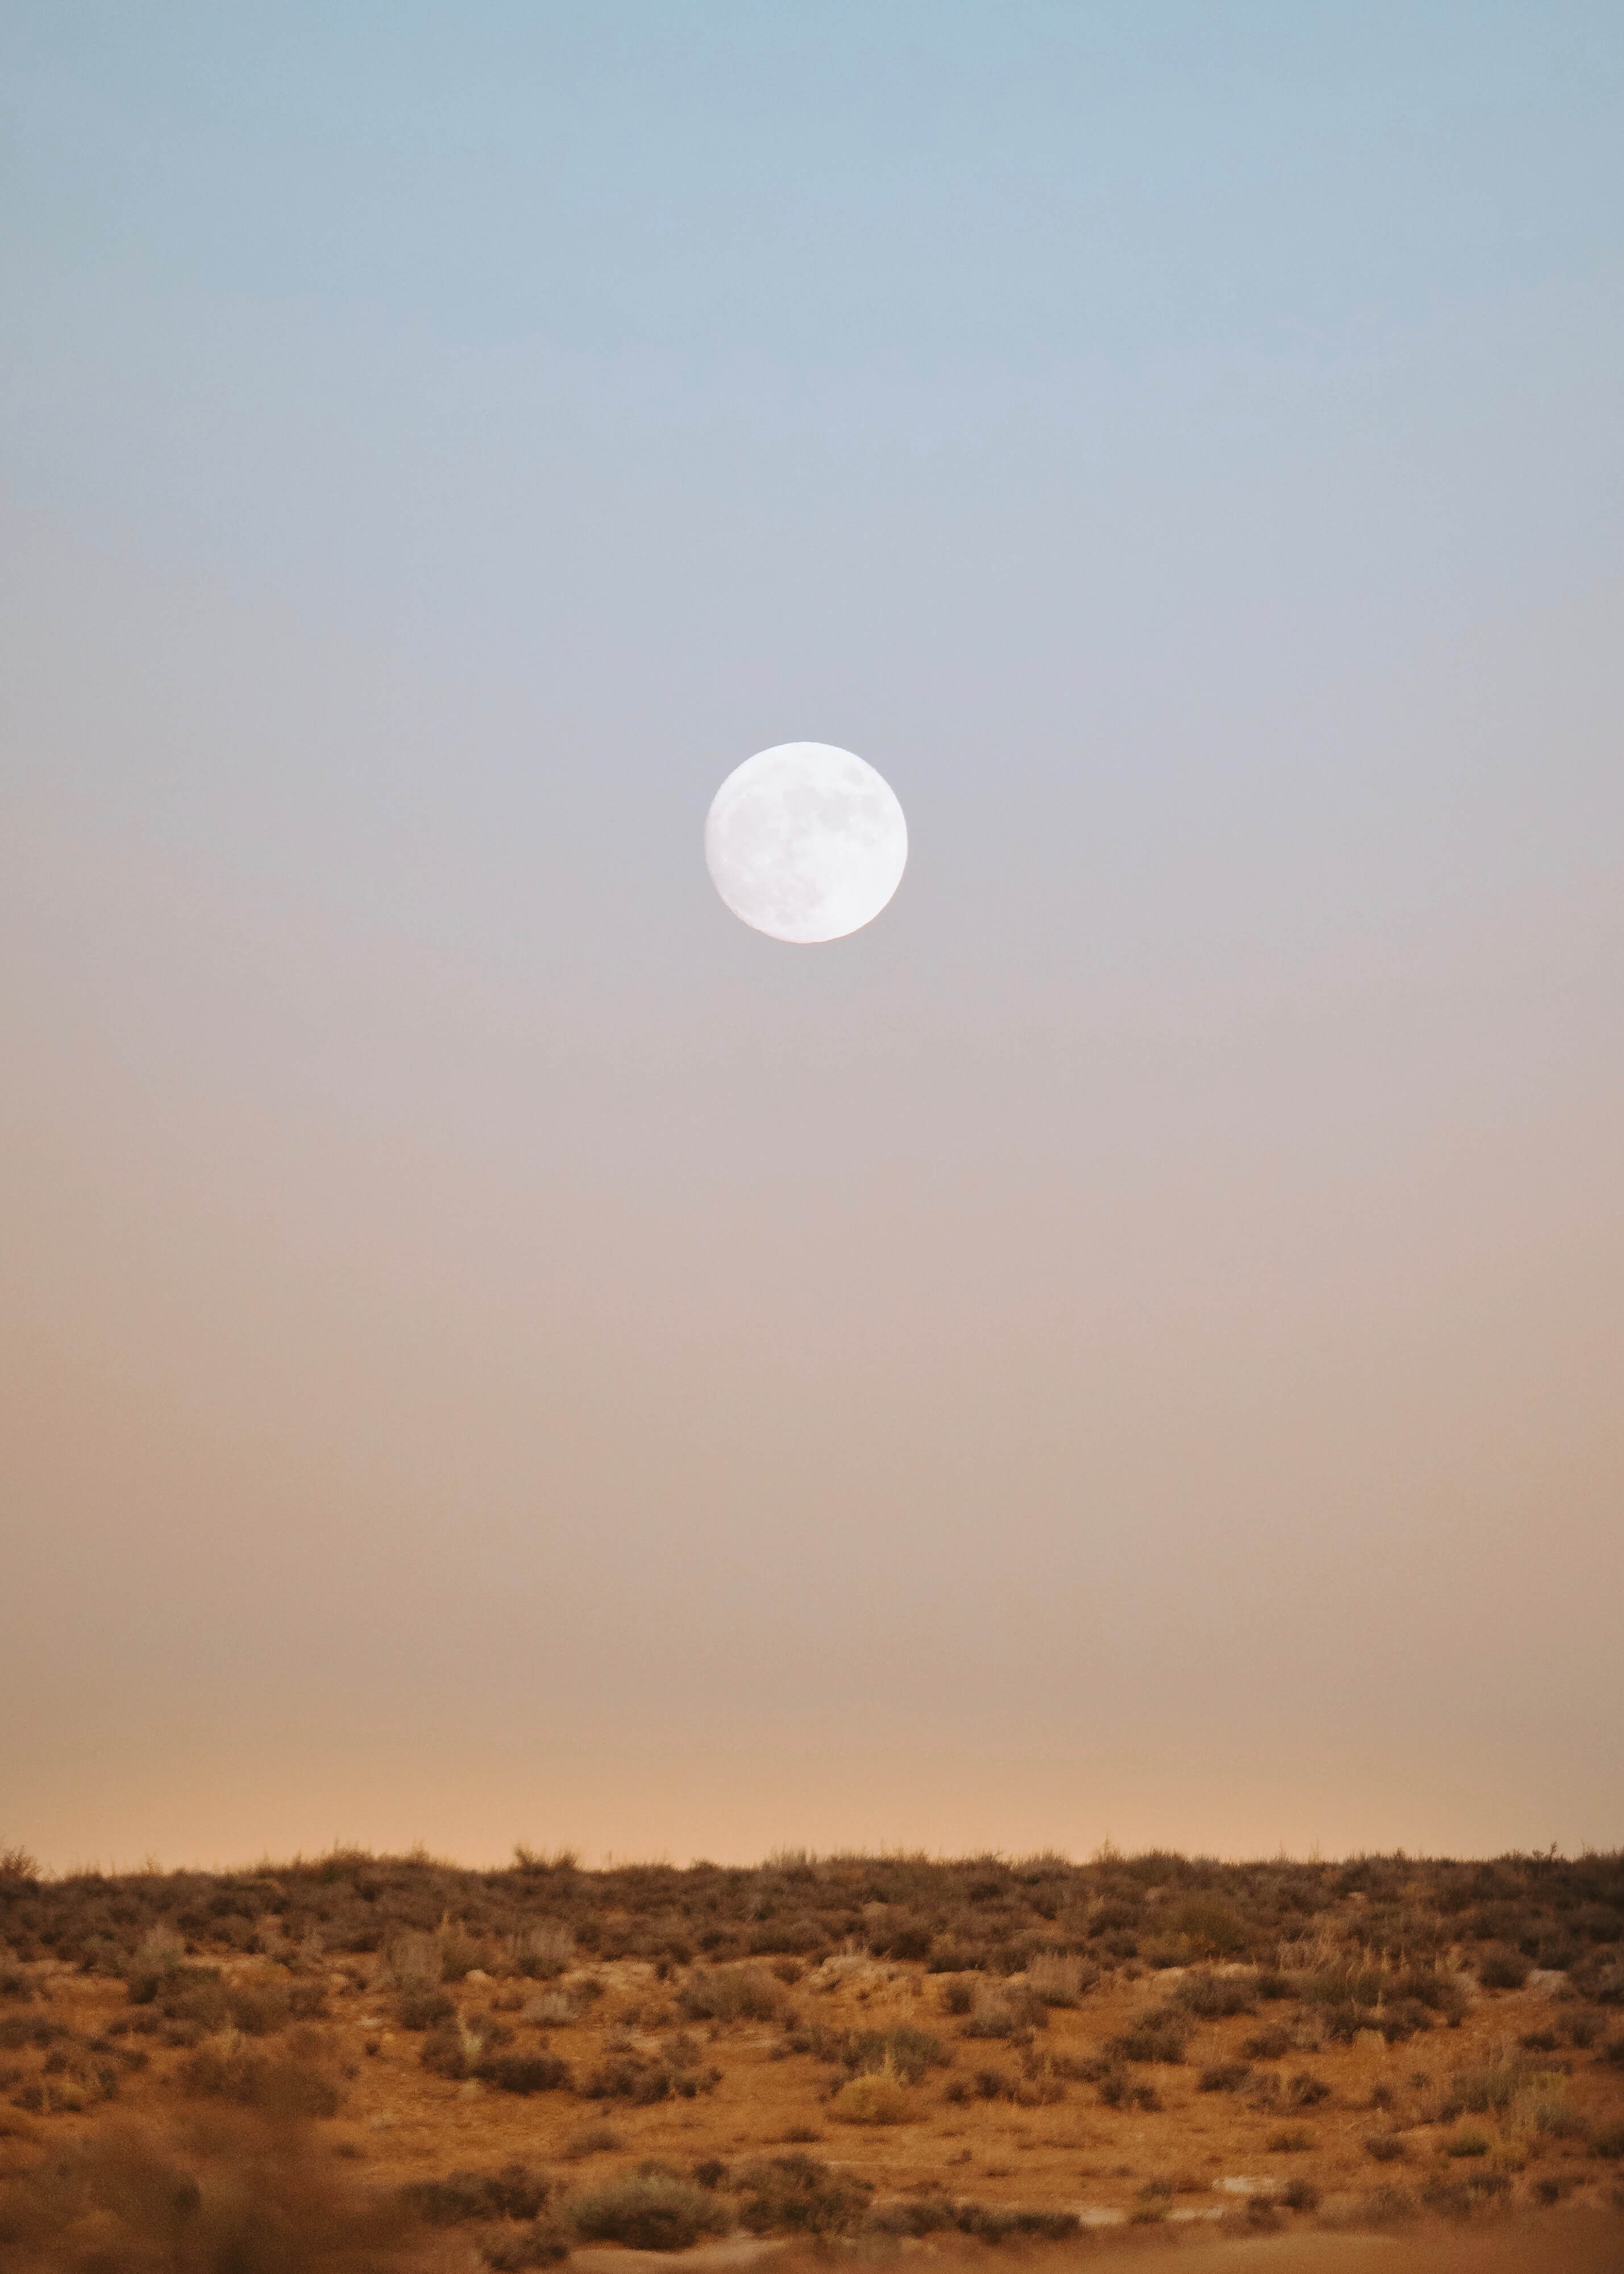 Full moon over a desert field at dusk